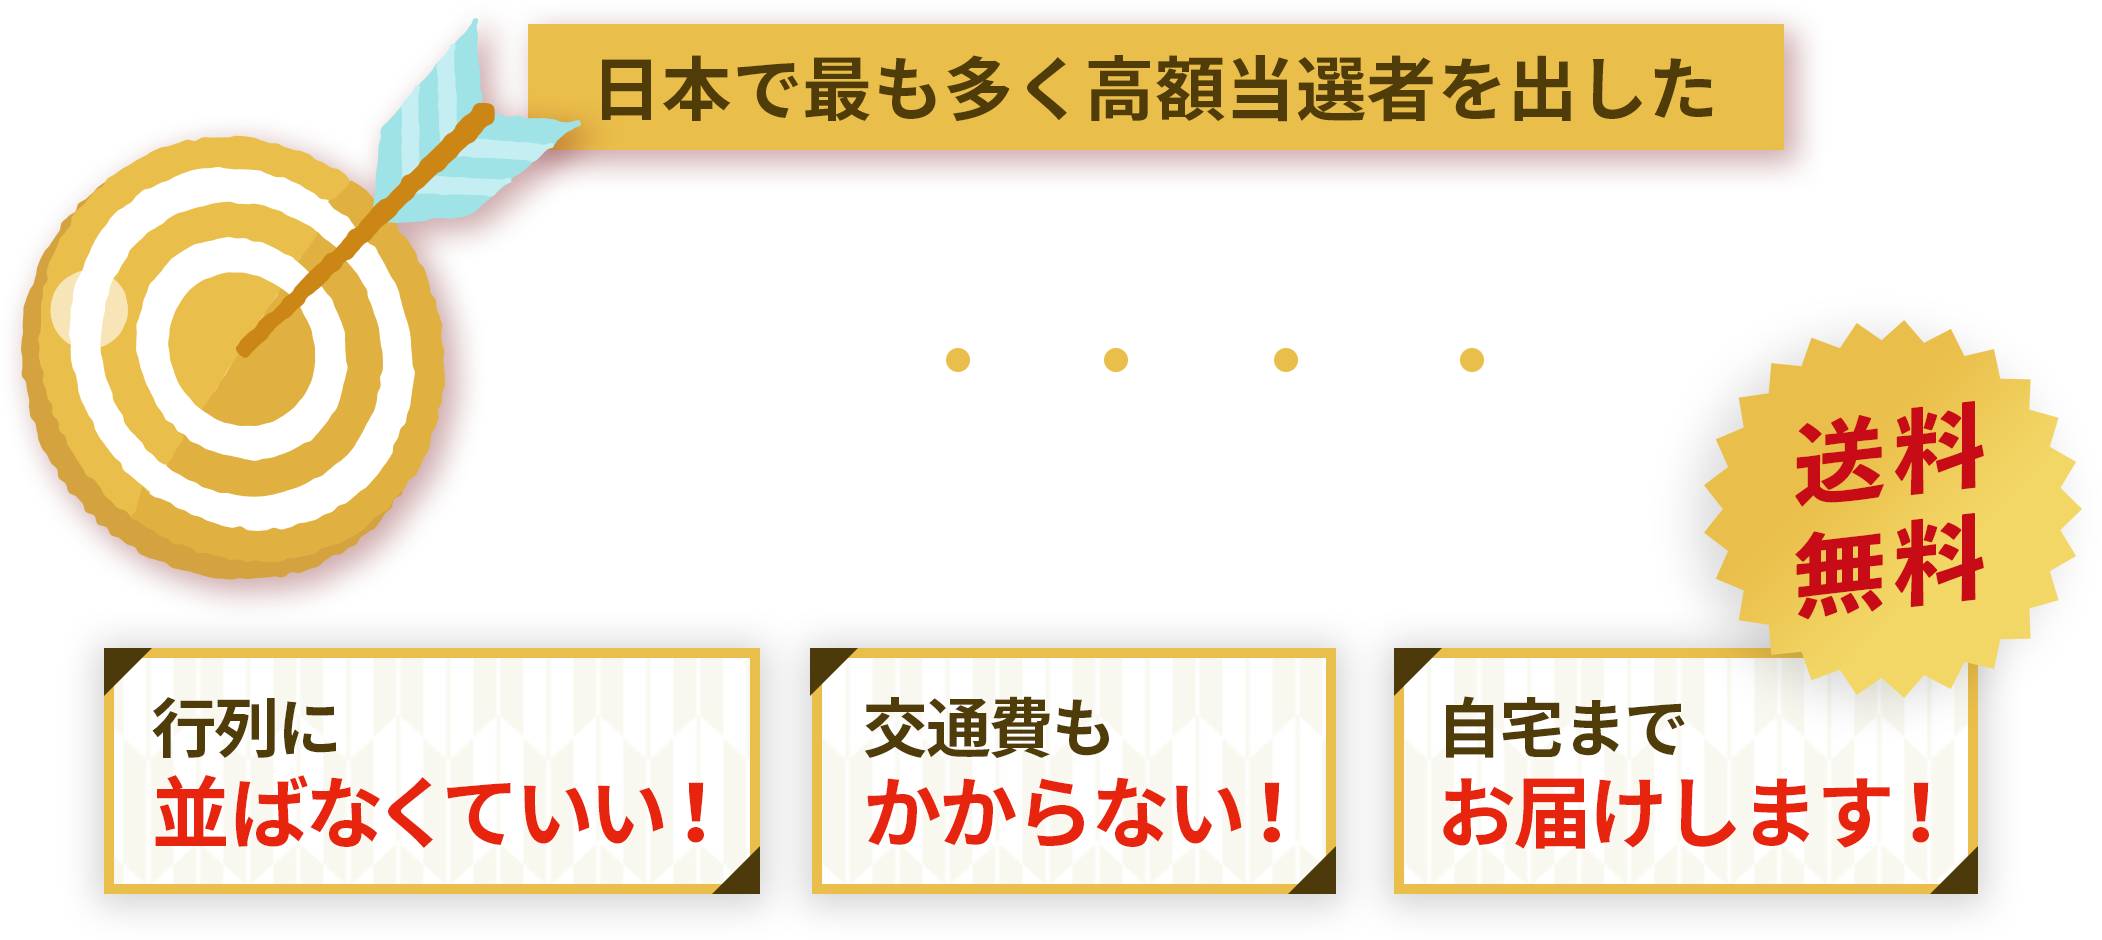 日本で最も多く高額当選者を出した西銀座チャンスセンターで宝くじ購入代行!!